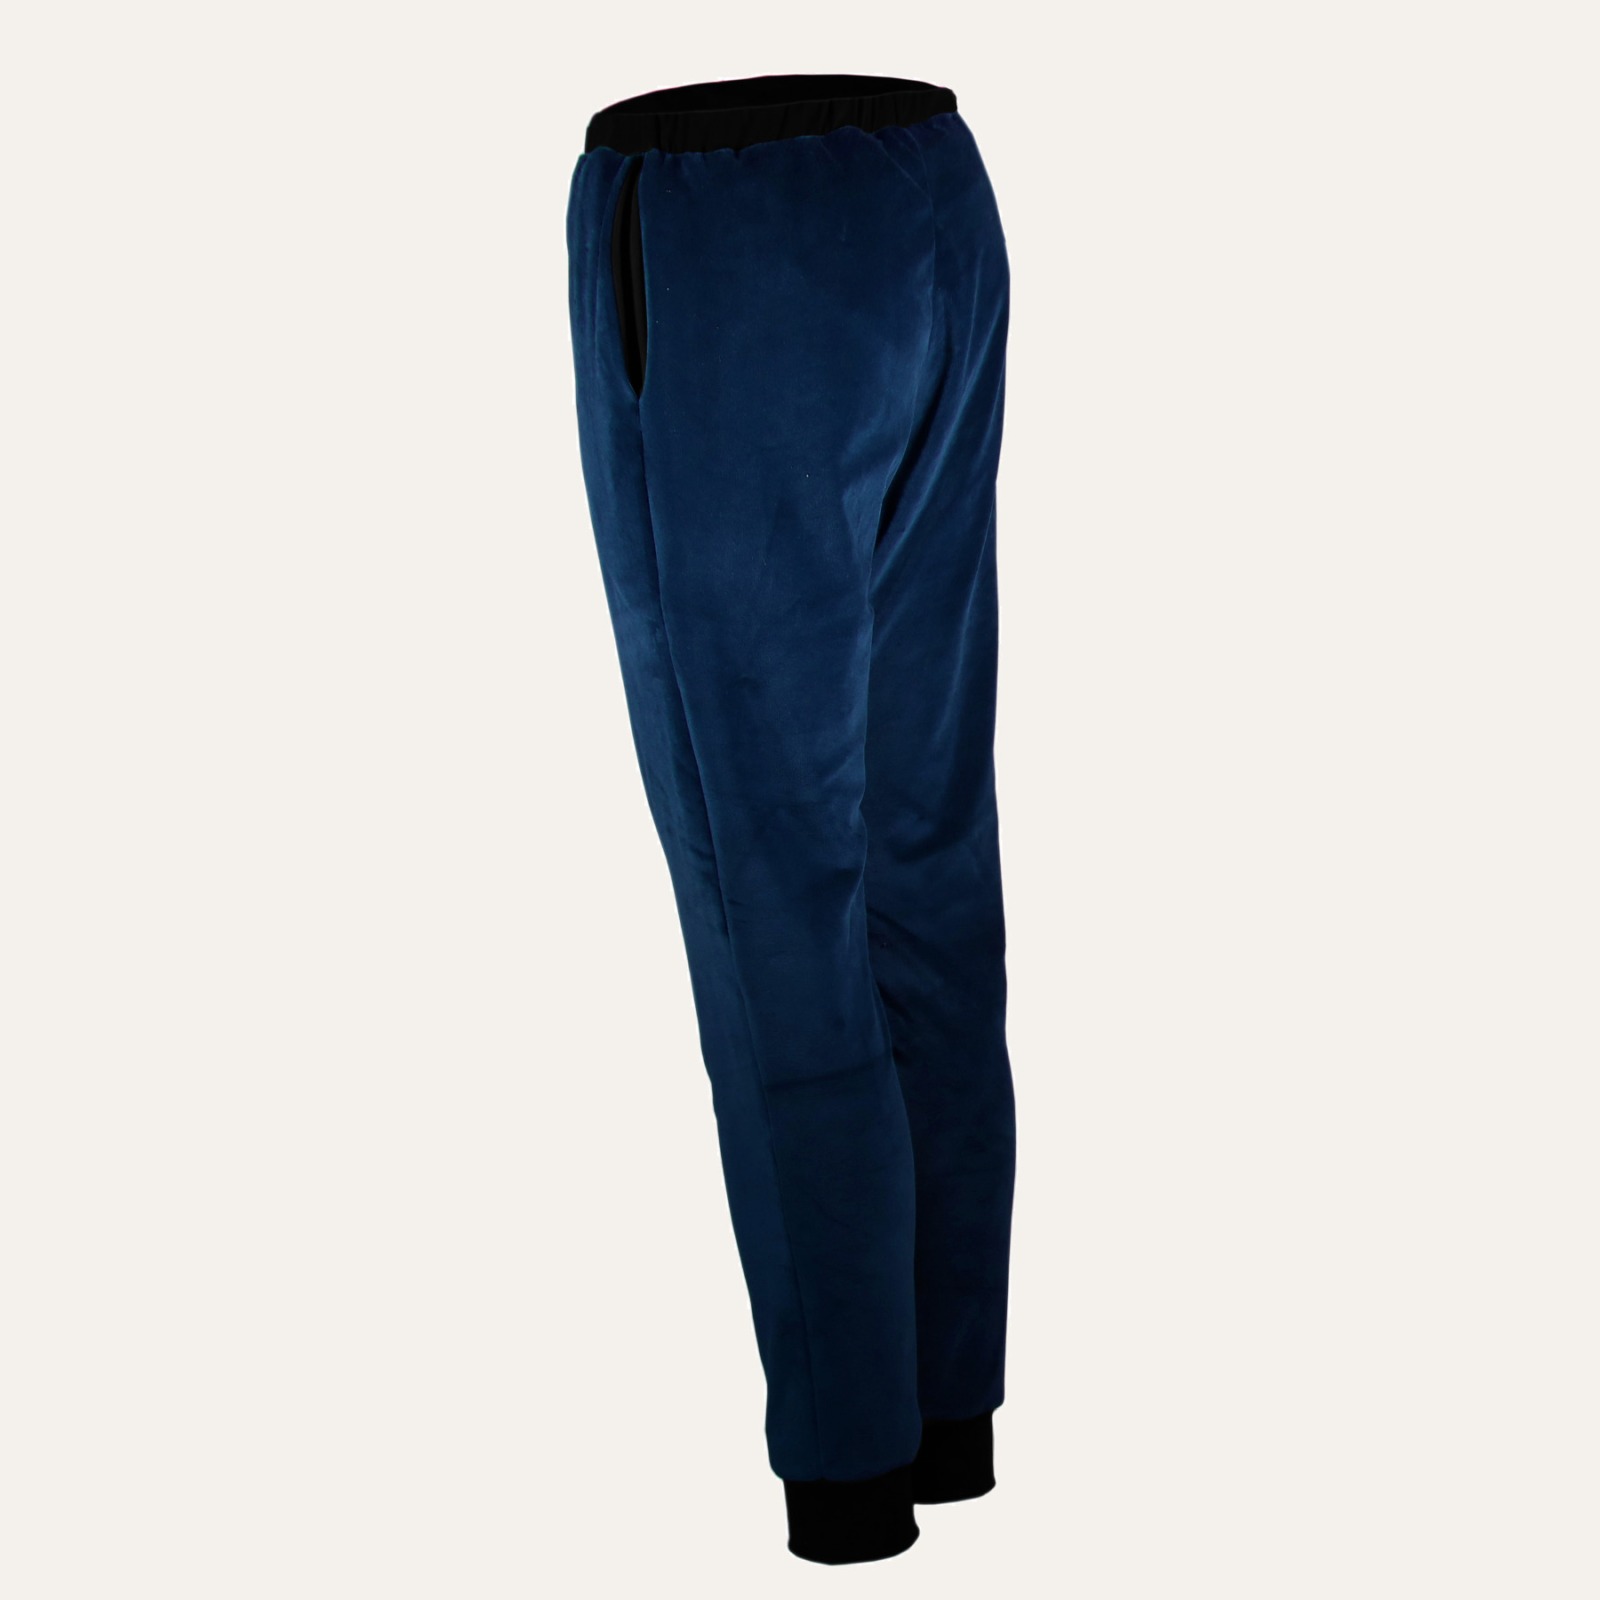 Organic velour pants Hygge blue / black 4